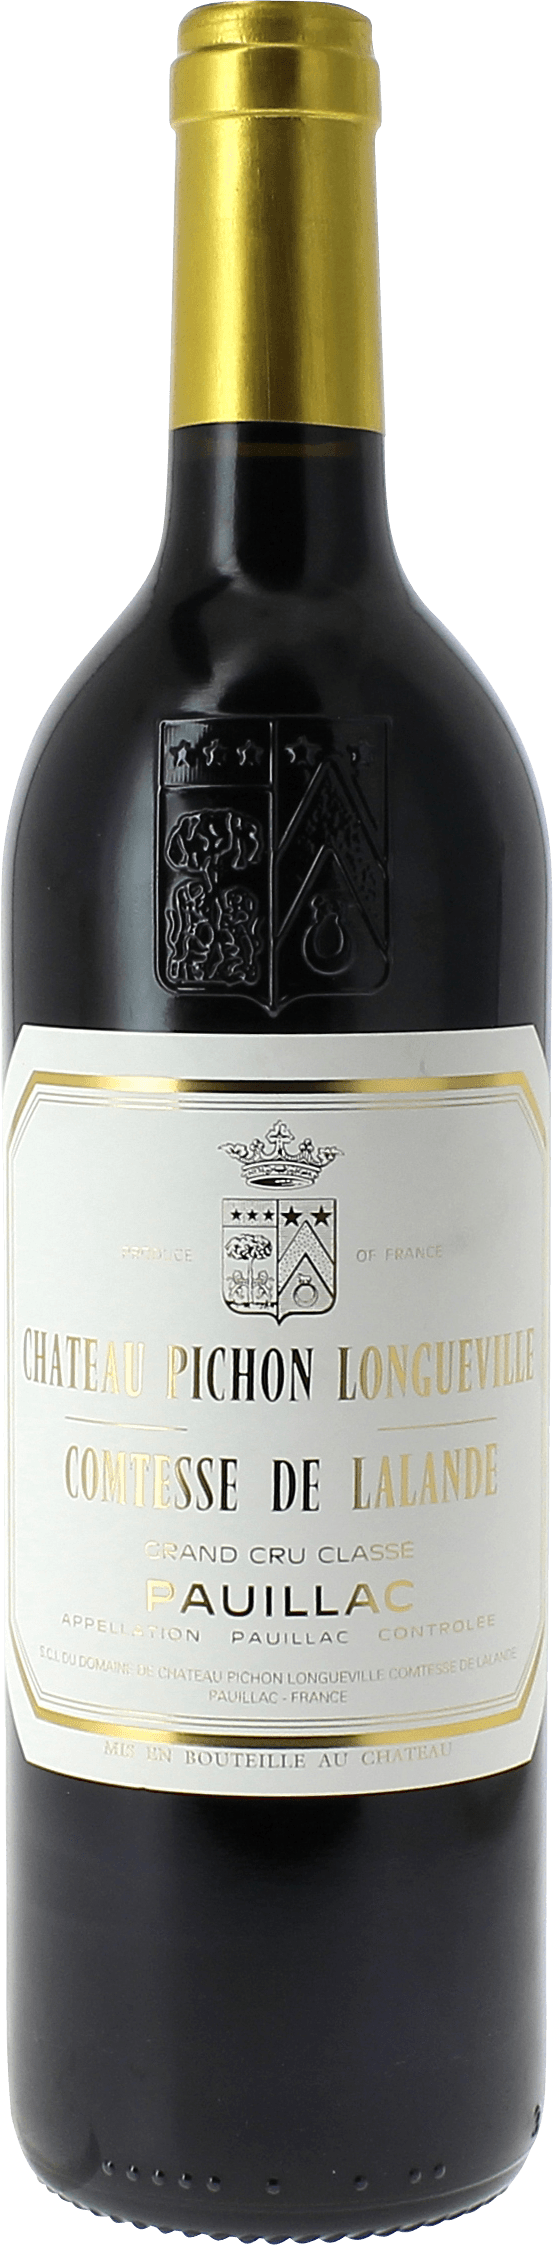 Pichon comtesse de lalande 2002 2me Grand cru class Pauillac, Bordeaux rouge